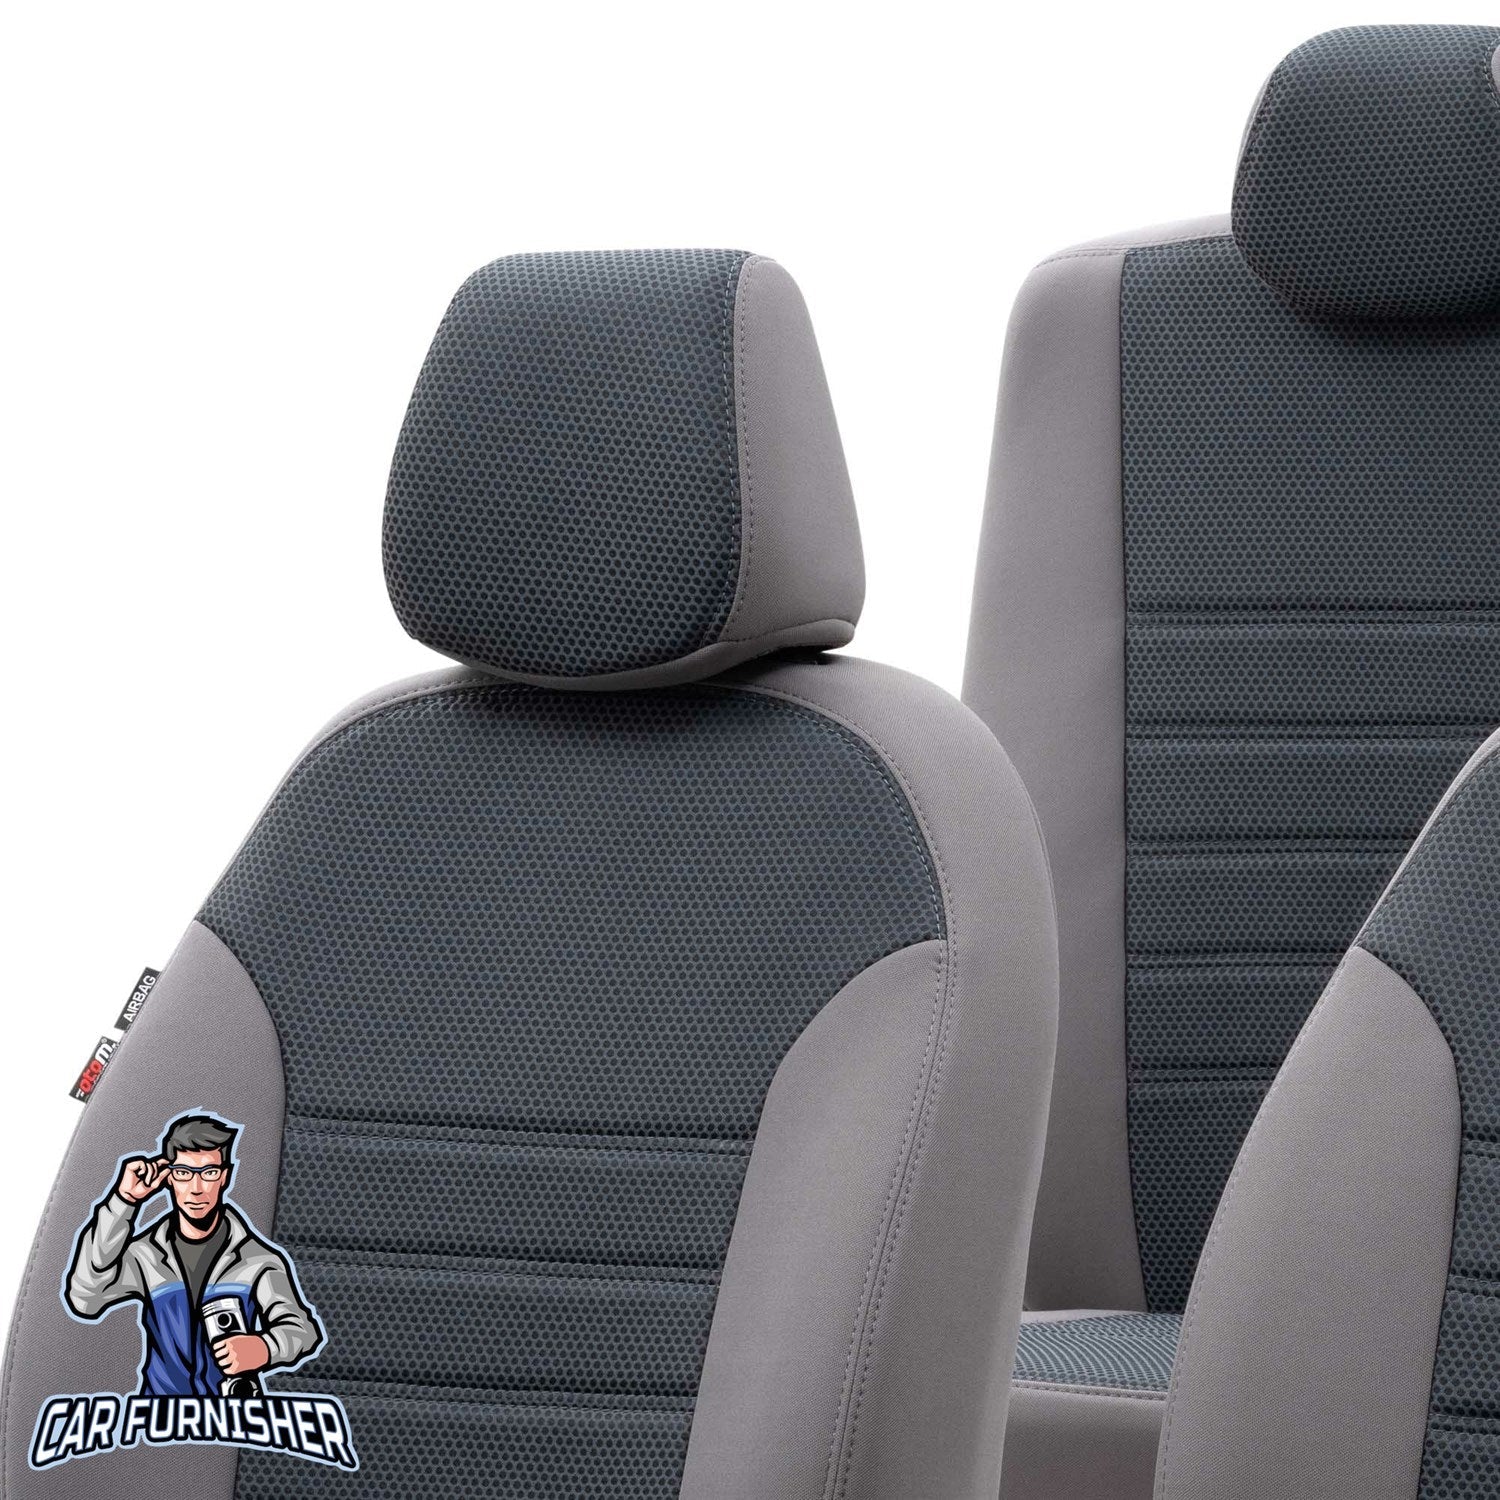 Kia XCeed Seat Covers Original Jacquard Design Smoked Jacquard Fabric